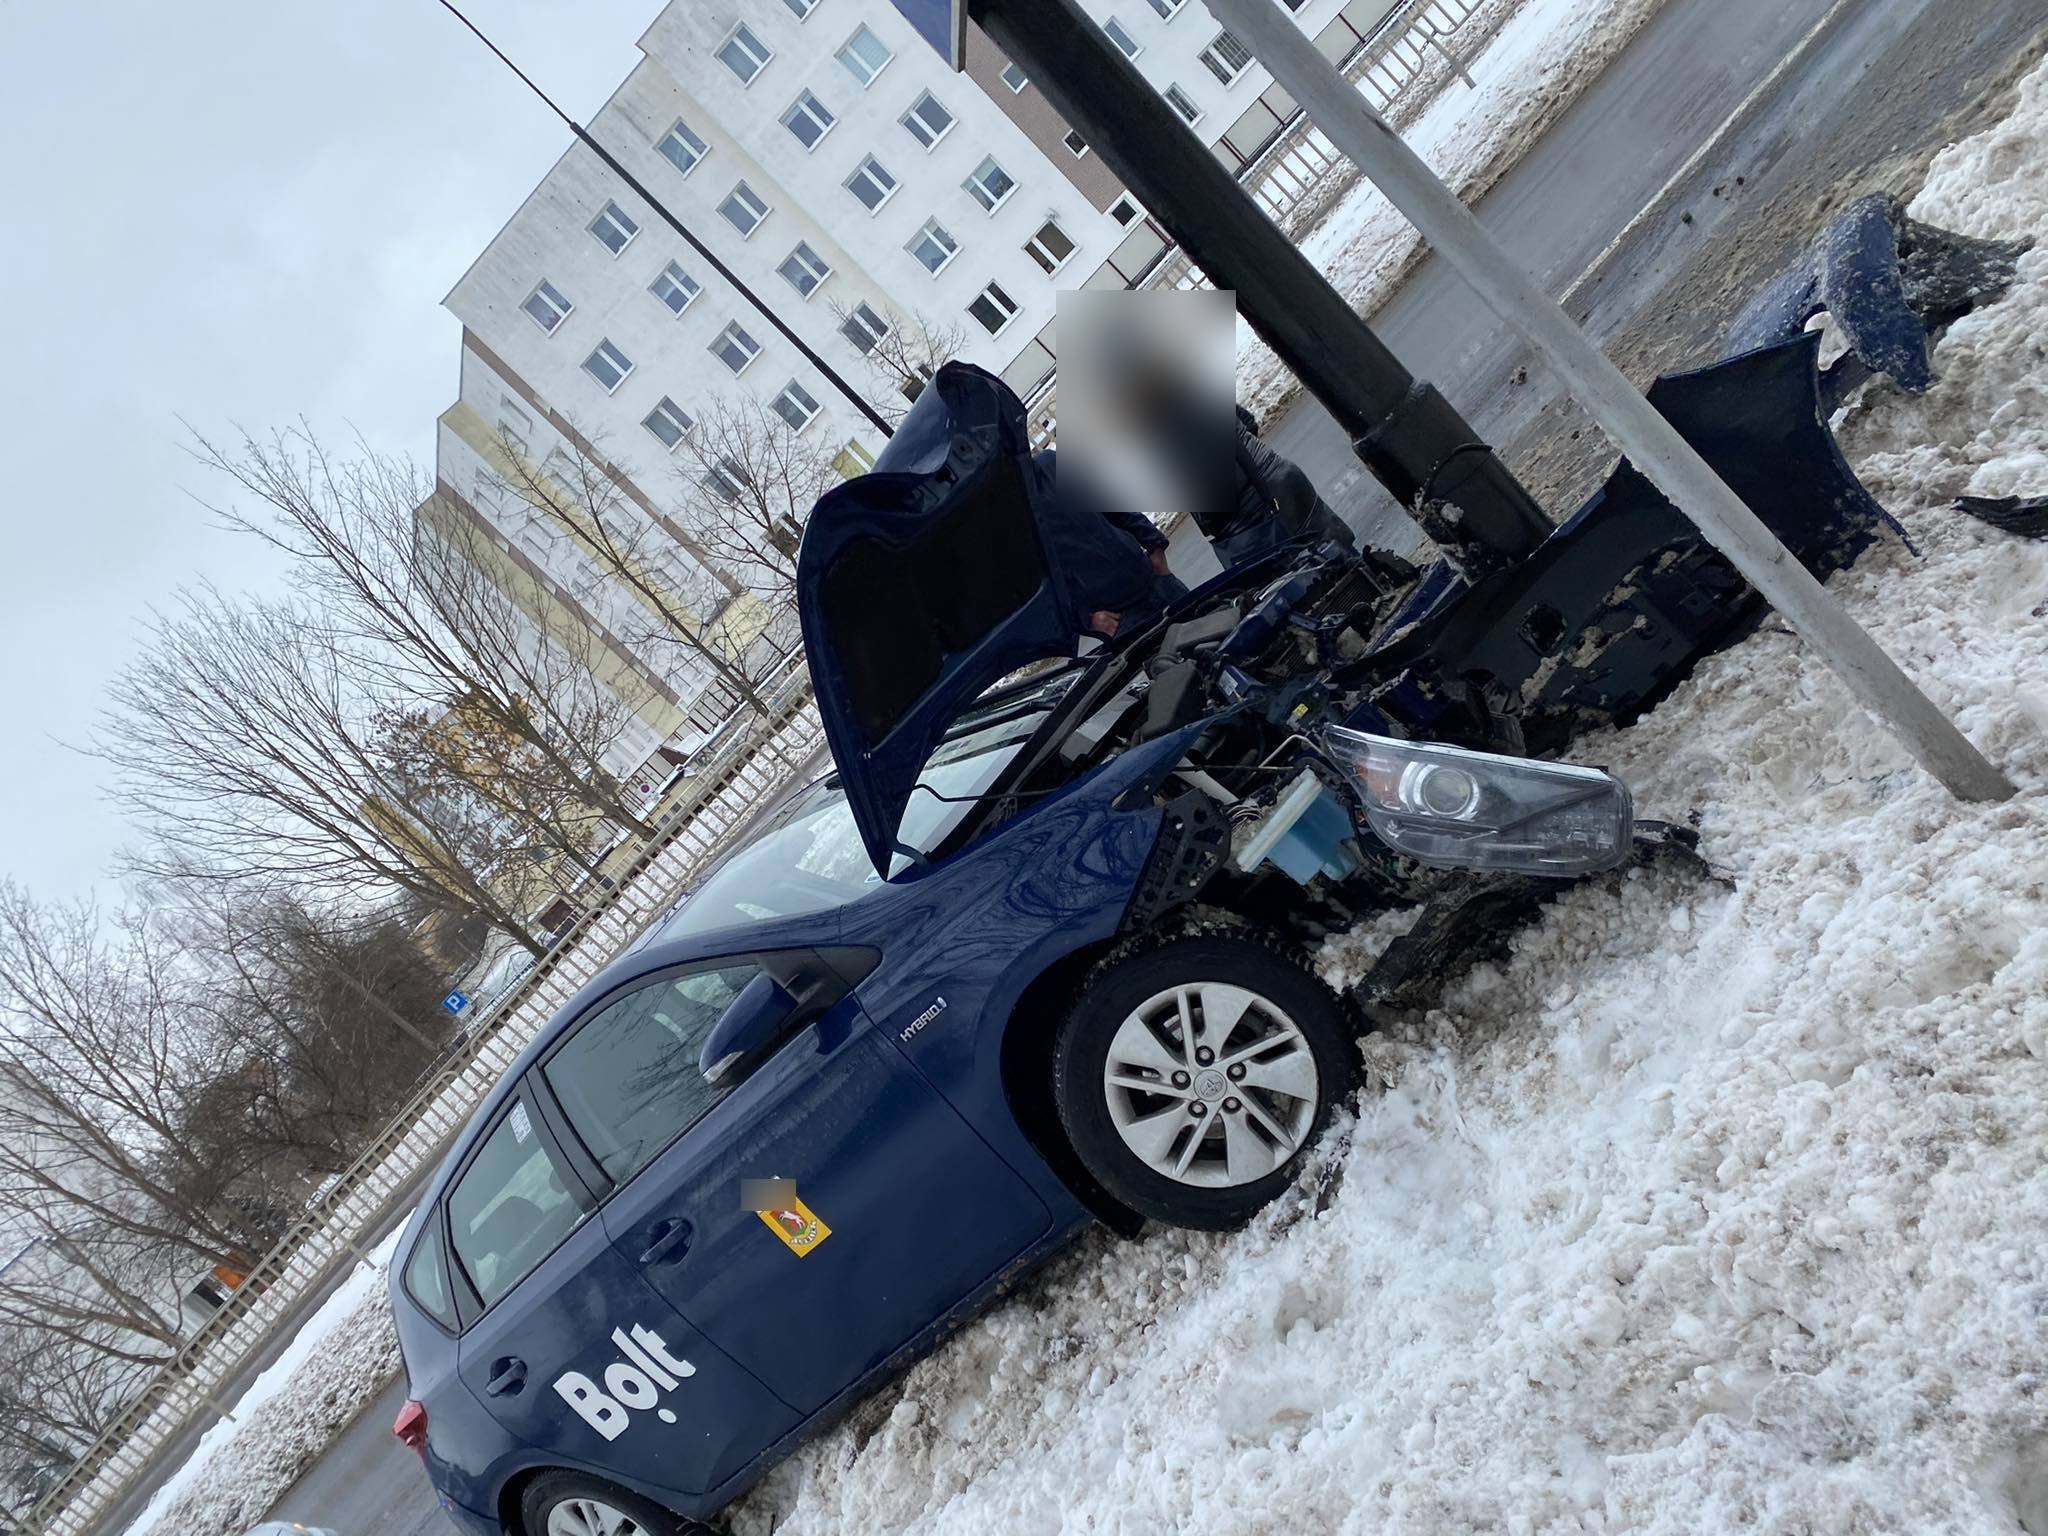 Groźne zdarzenie drogowe w Lublinie. Jeden z pojazdów uderzył w słup (zdjęcia)